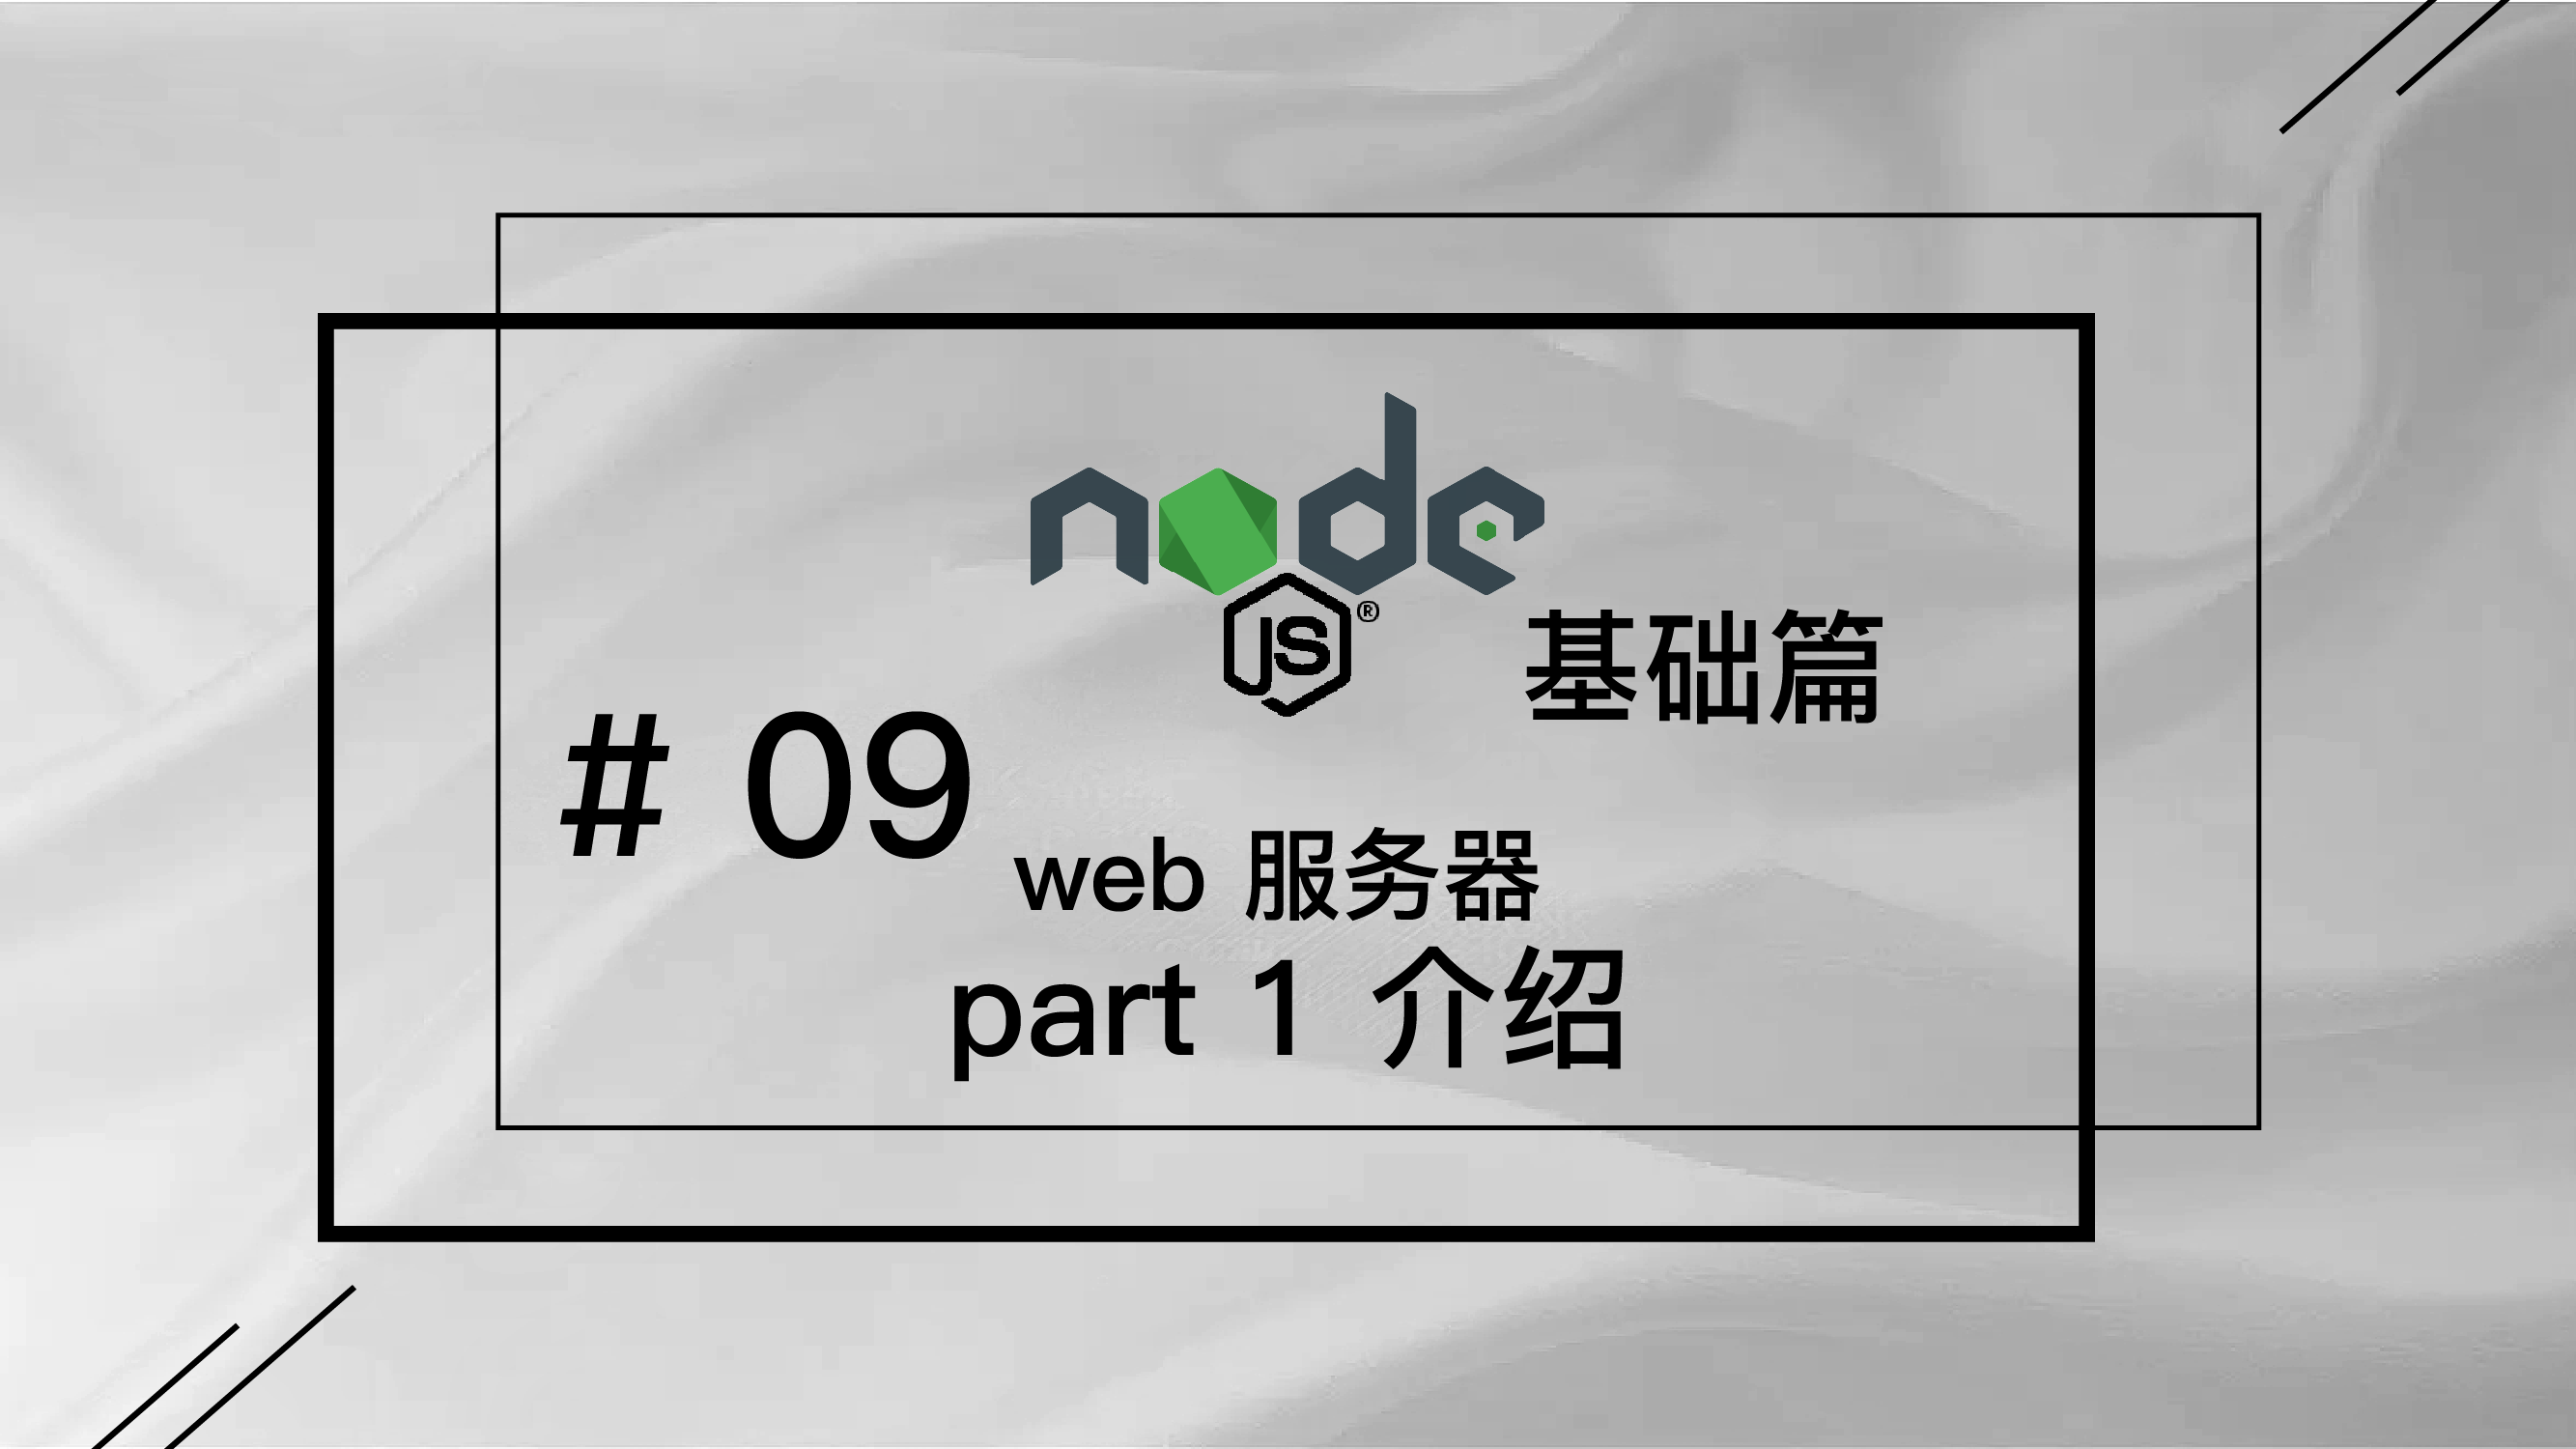 轻松学 Node.js - 基础篇免费视频教程 #9 web 服务器 part 1 介绍